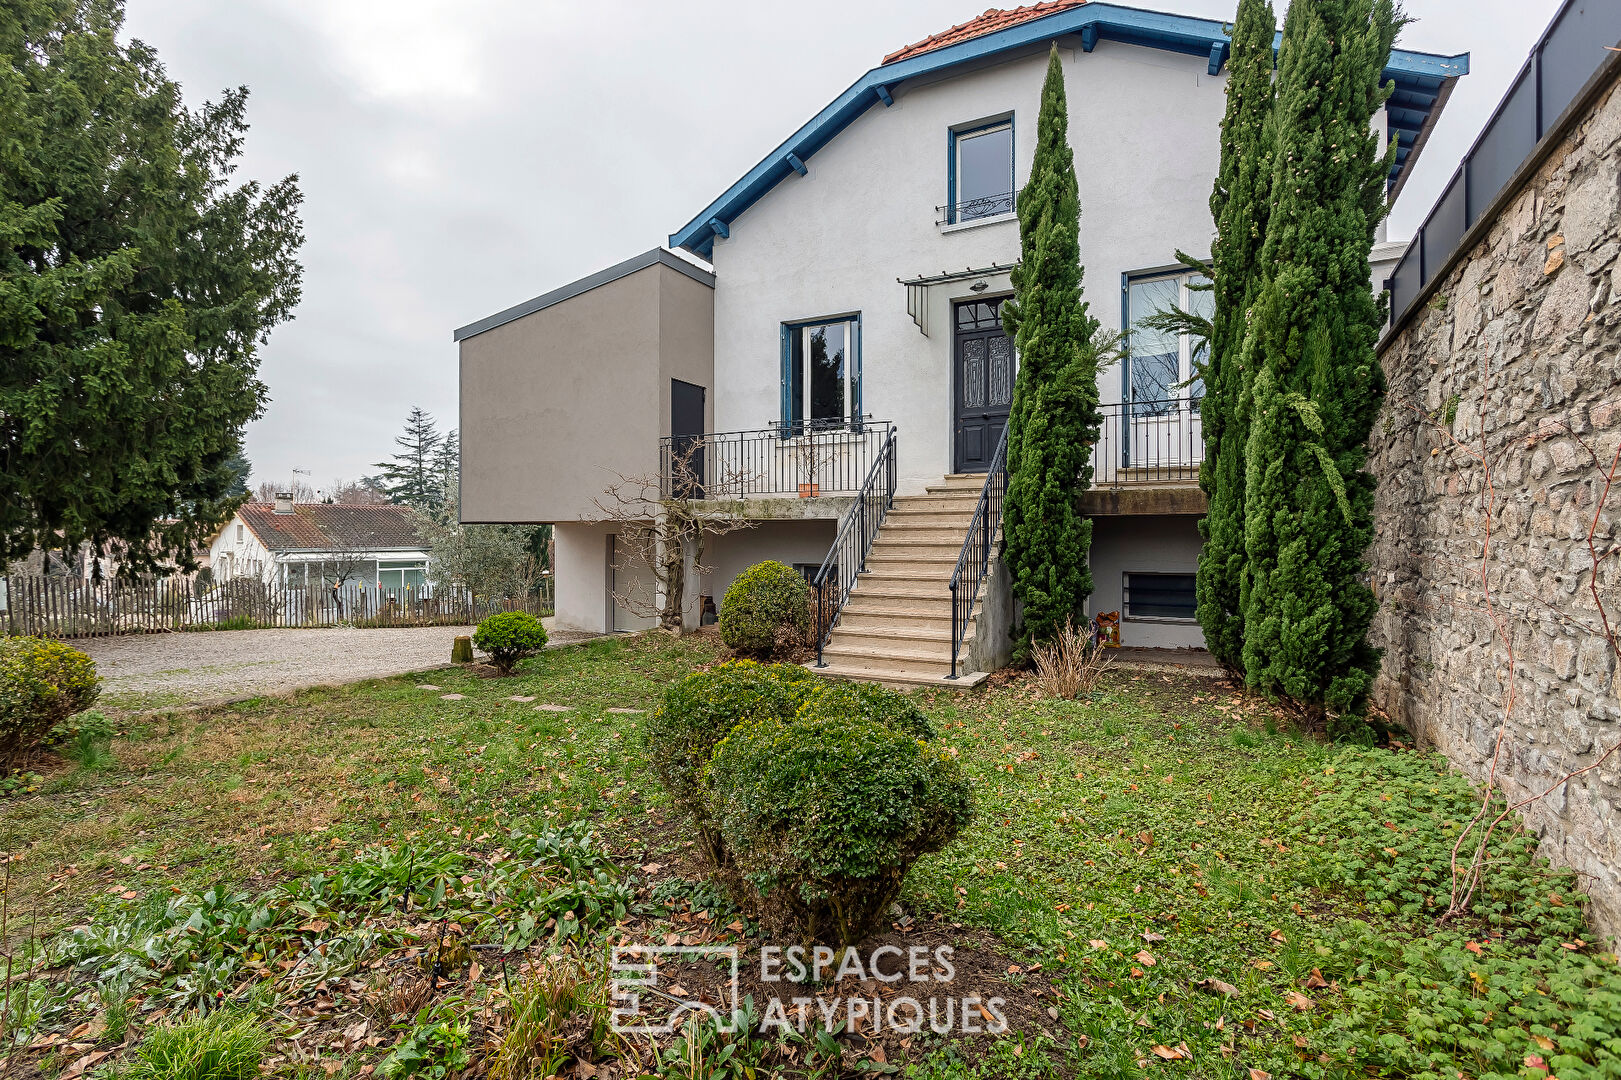 Maison familiale avec extension contemporaine à St-Genis-Laval